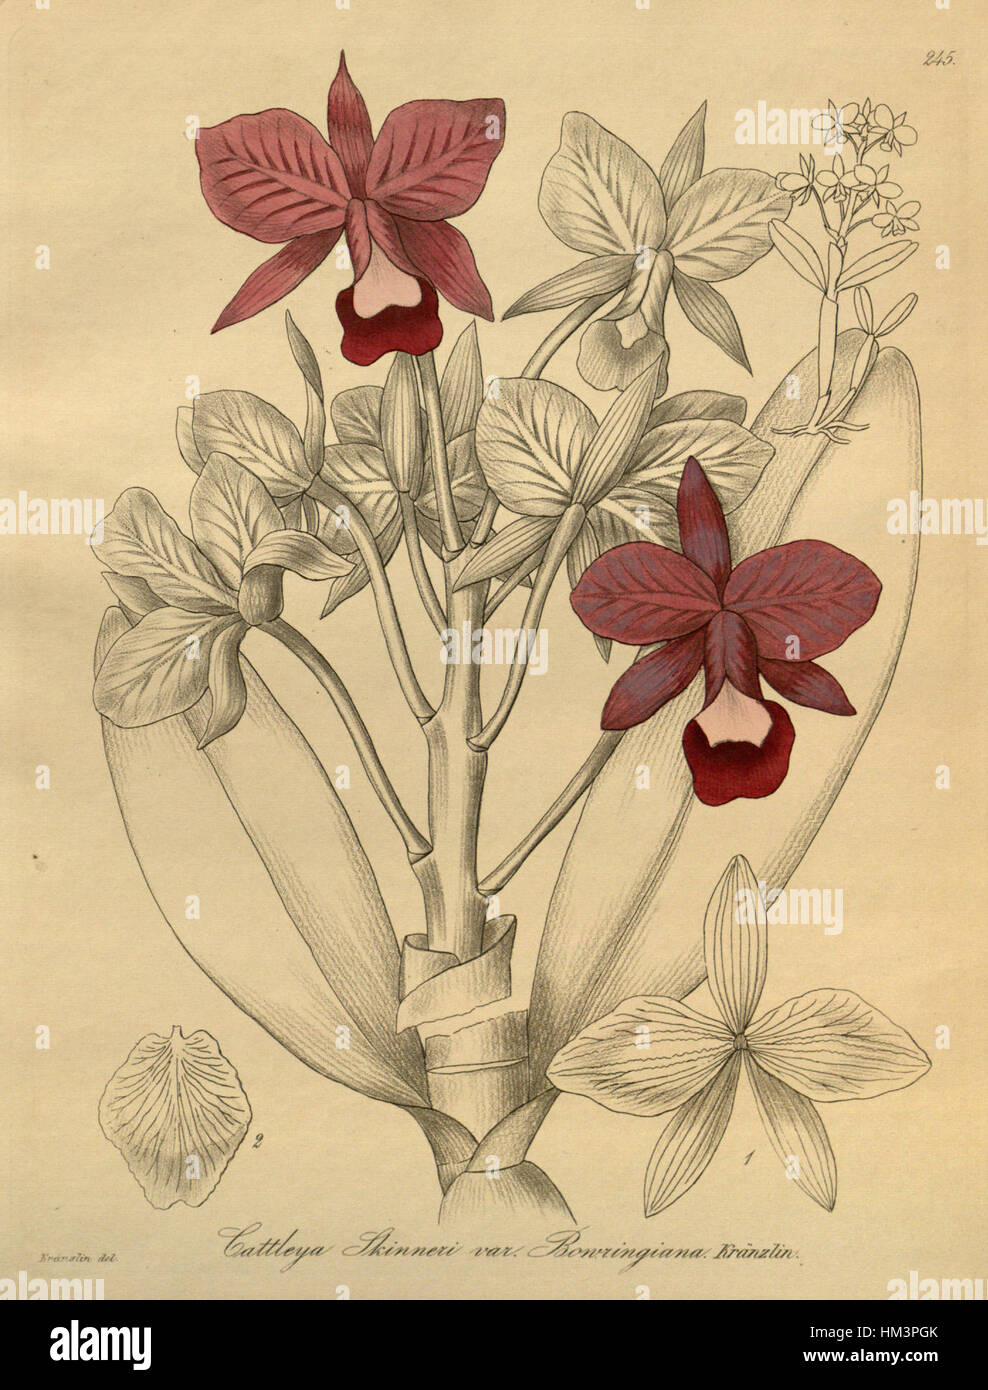 Guarianthe bowringiana (as Cattleya skinneri var. bowringiana) - Xenia 3-245 (1892) Stock Photo